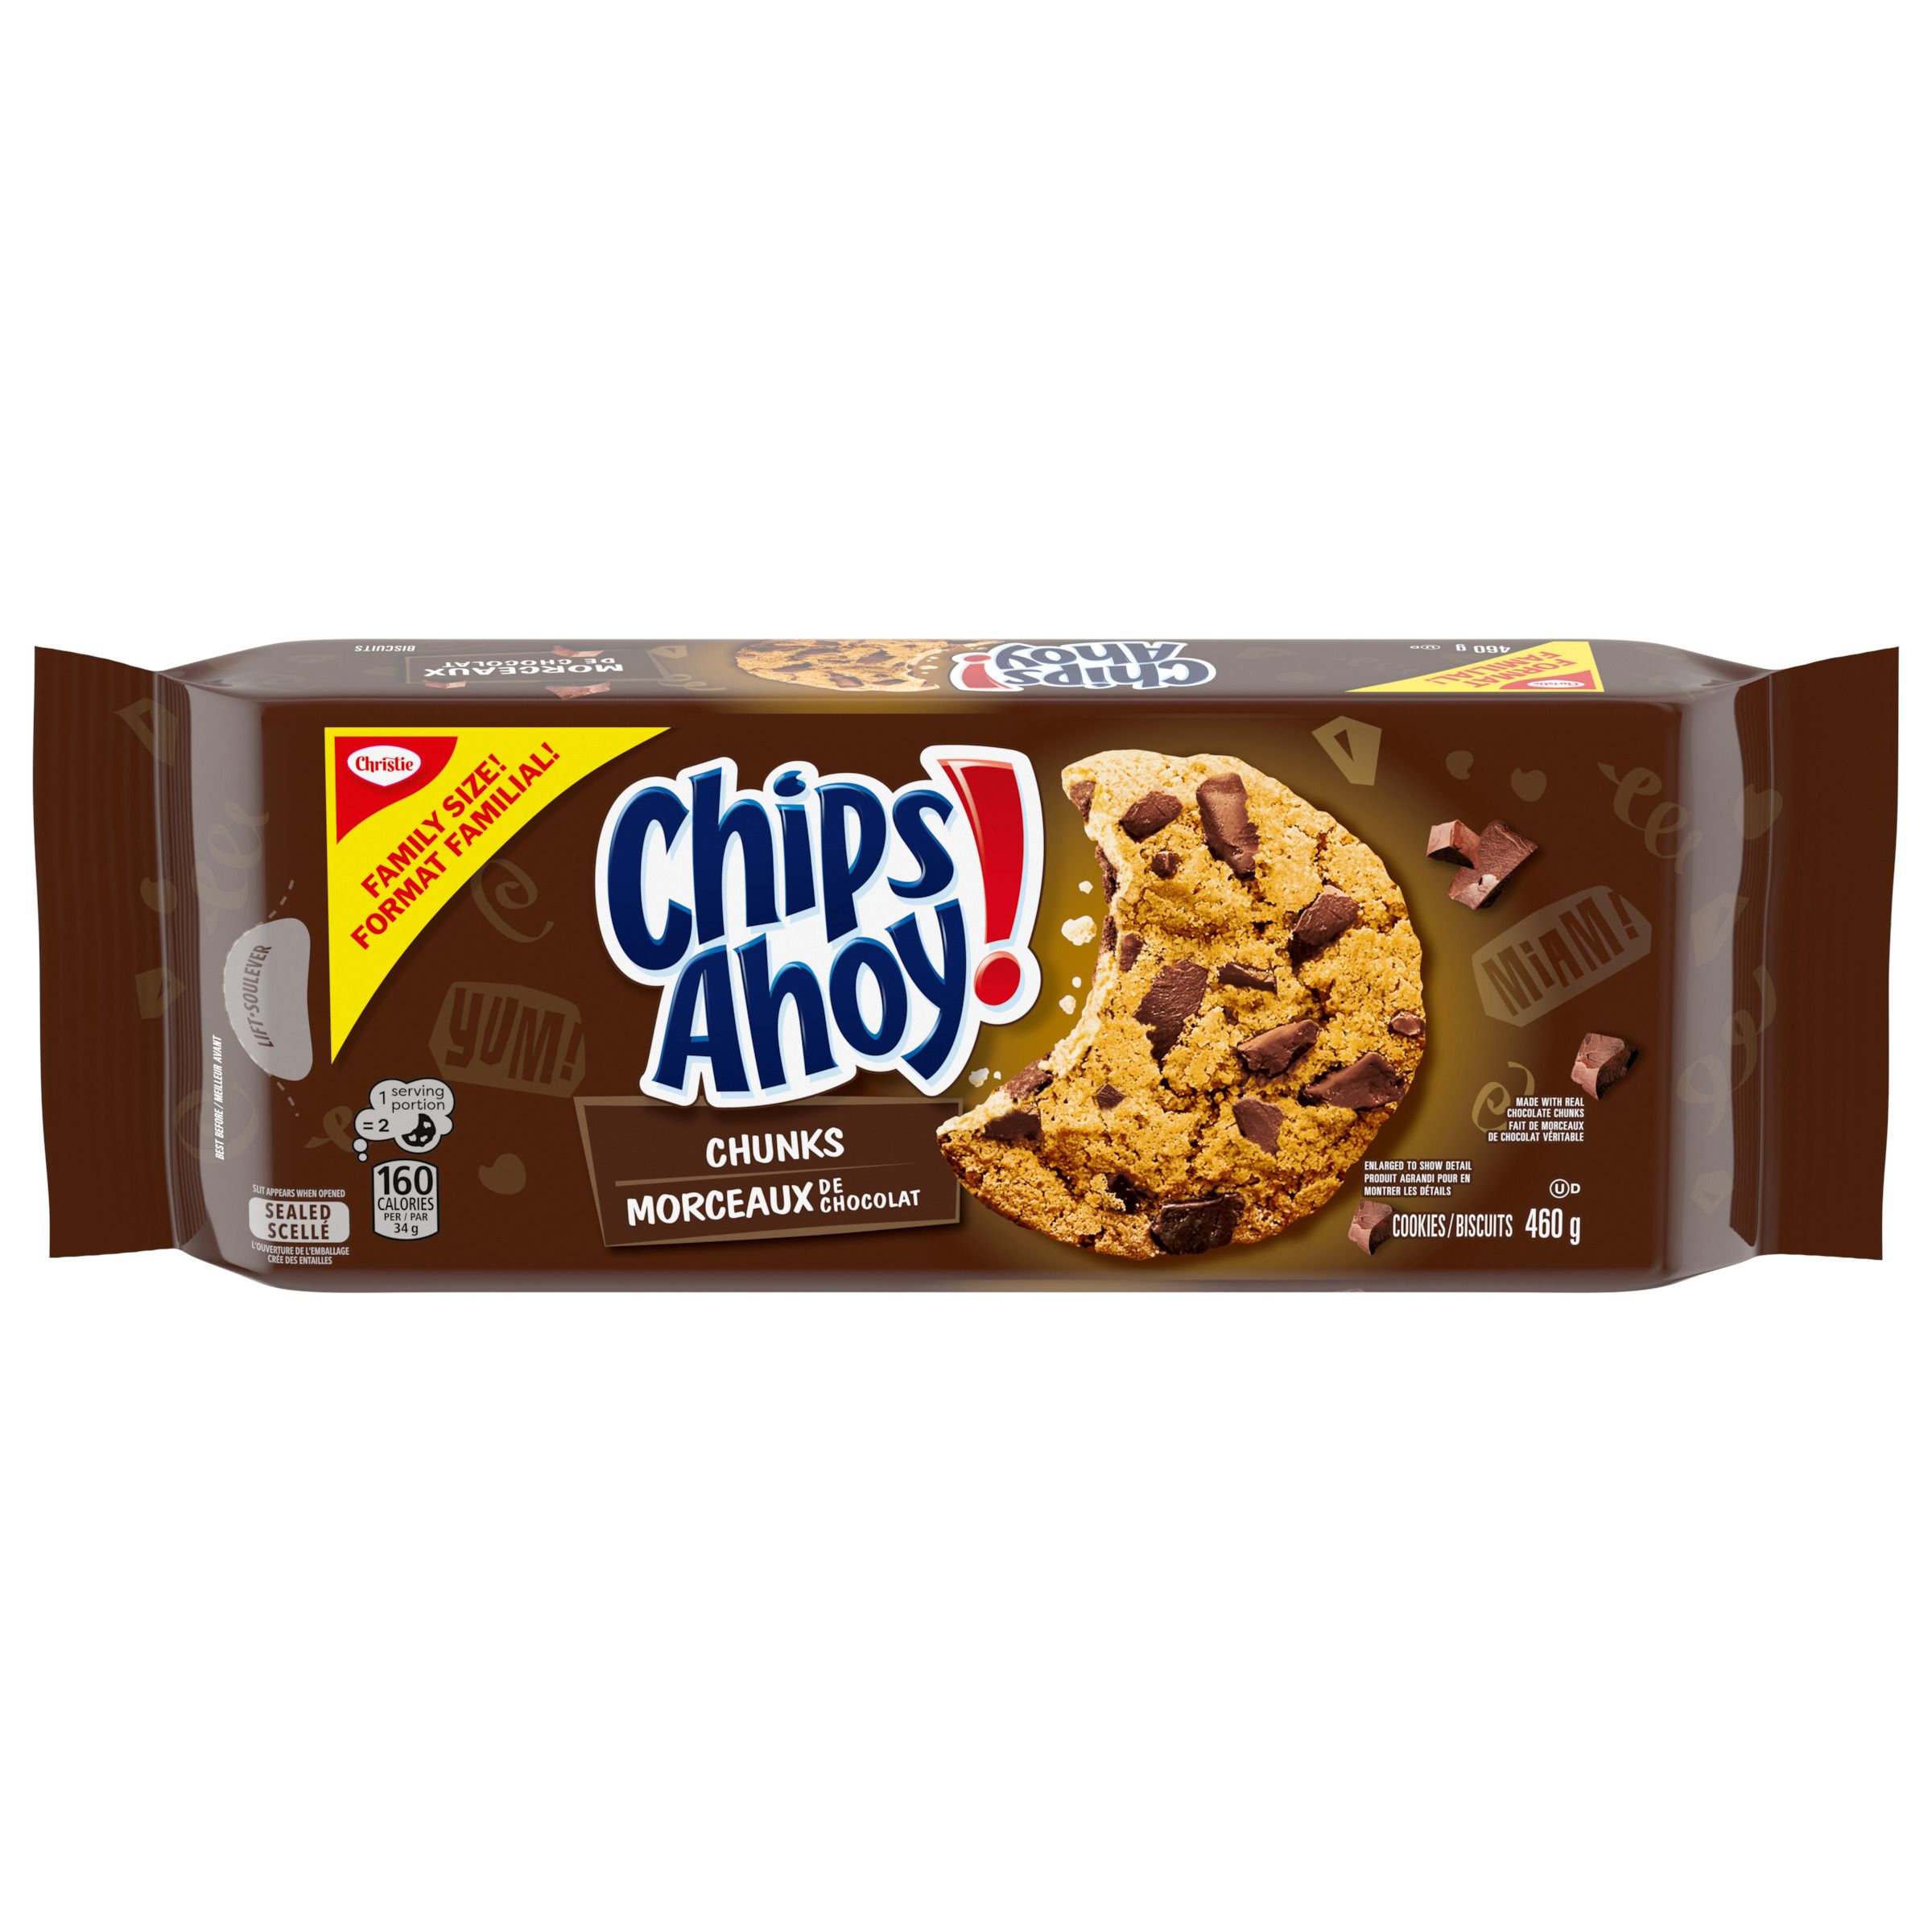 Biscuits CHIPS AHOY! Morceaux de chocolat, 1 emballage refermable, format familial de 460g-1